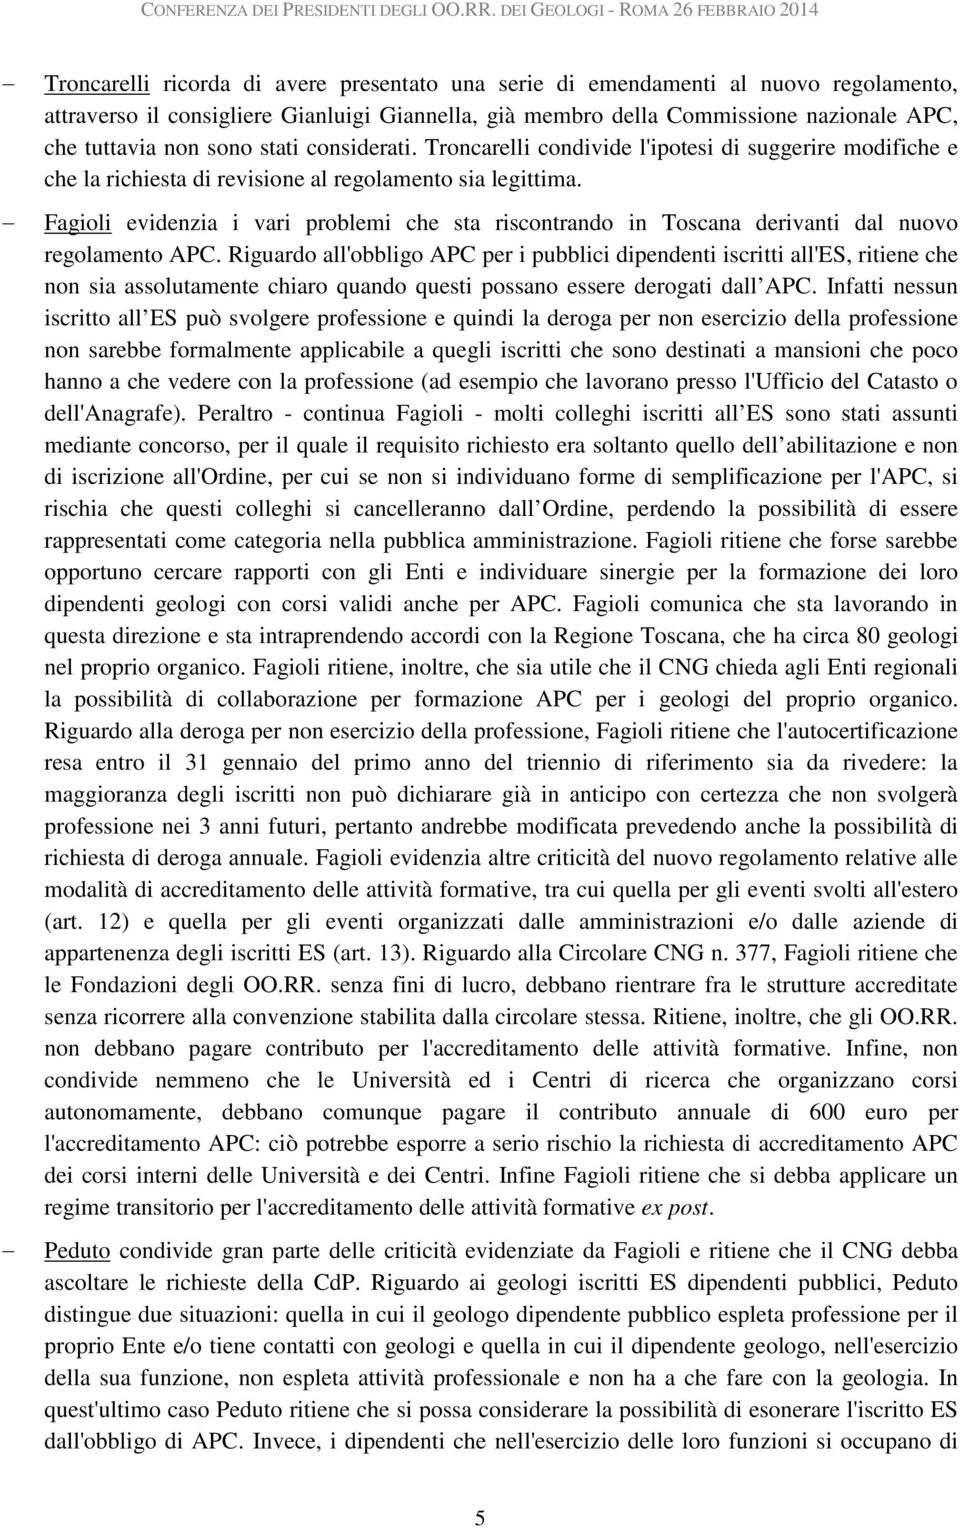 Fagioli evidenzia i vari problemi che sta riscontrando in Toscana derivanti dal nuovo regolamento APC.